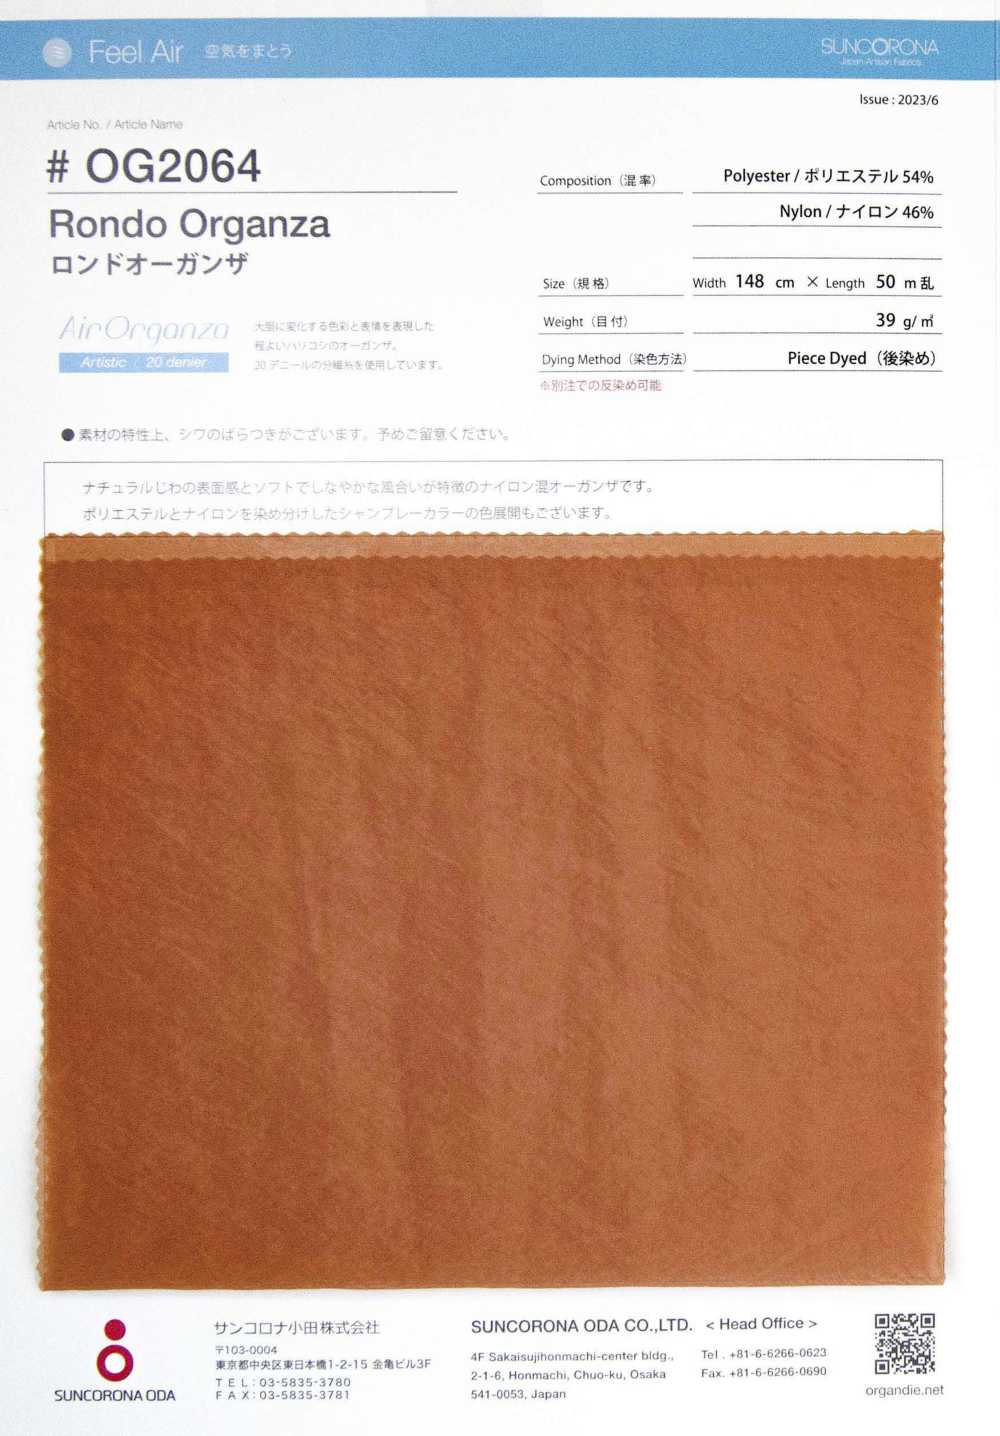 OG2064 Rondo Organza[Fabrication De Textile] Suncorona Oda